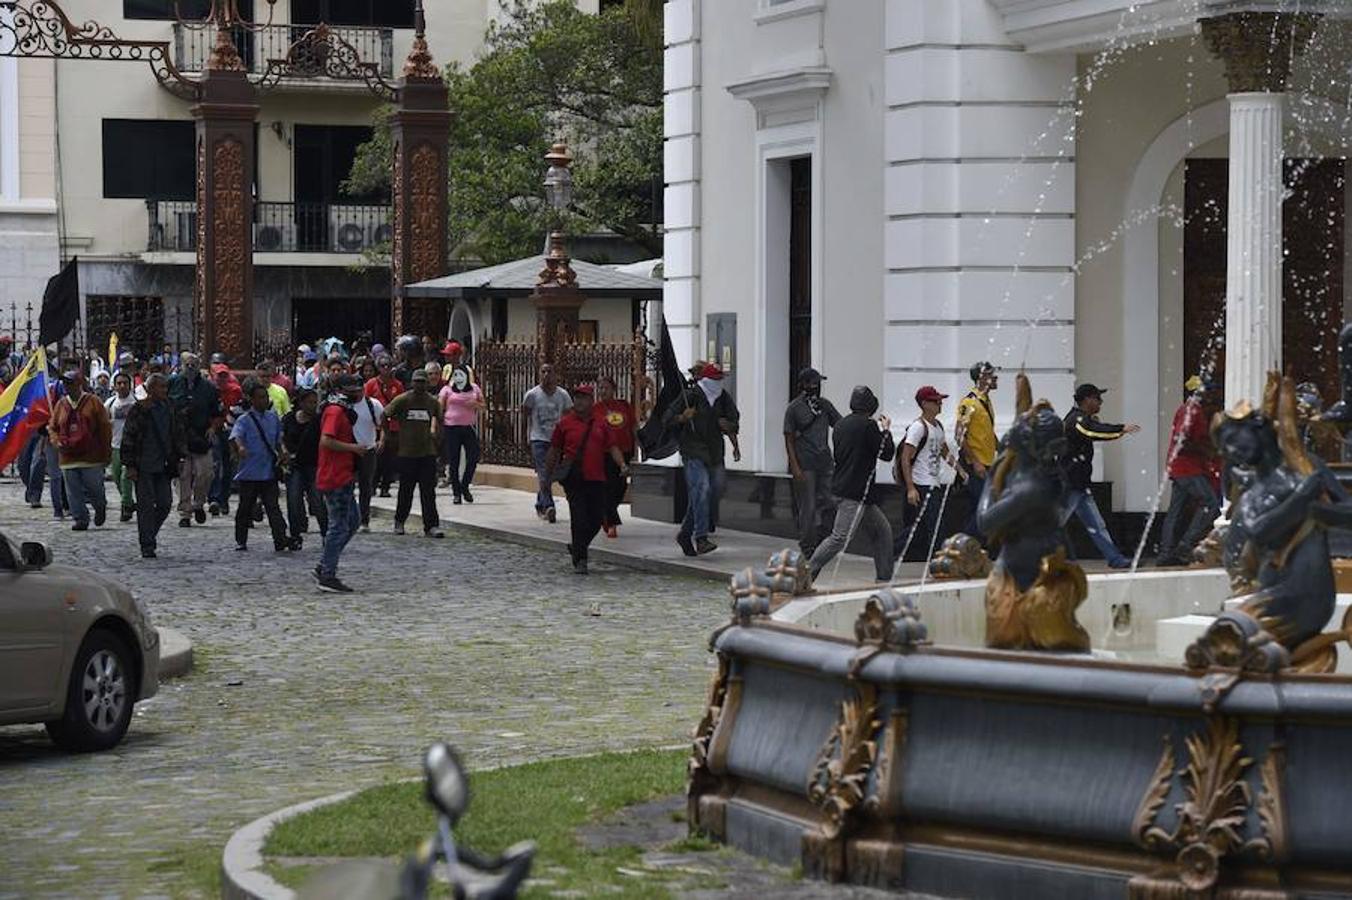 Los simpatizantes del Gobierno de Maduro lanzaron varios cohetes pirotécnicos en los alrededores de la cámara